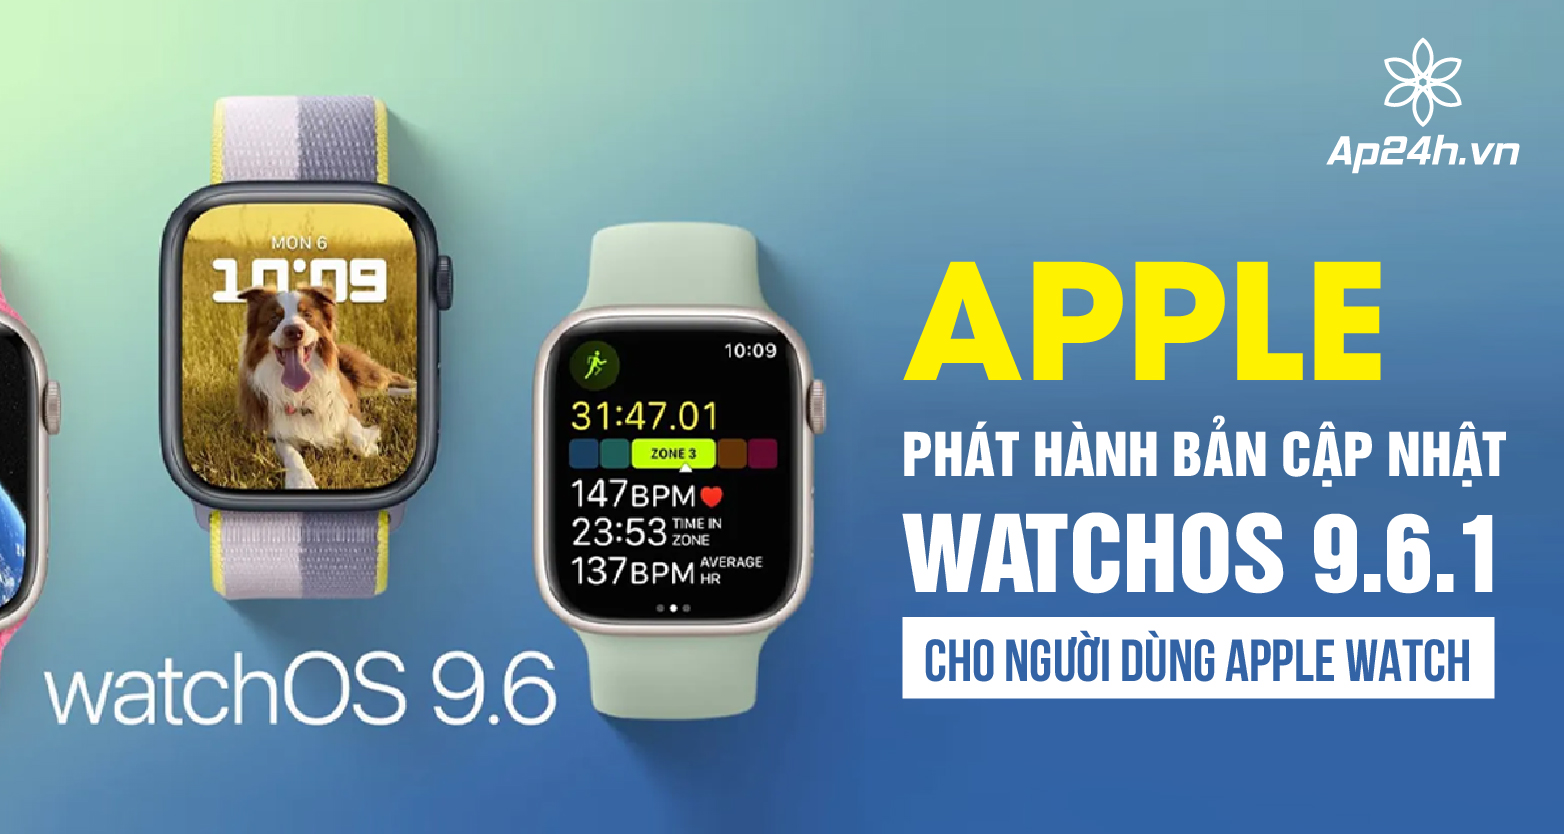  Apple phát hành bản cập nhật WatchOS 9.6.1 cho người dùng Apple Watch 